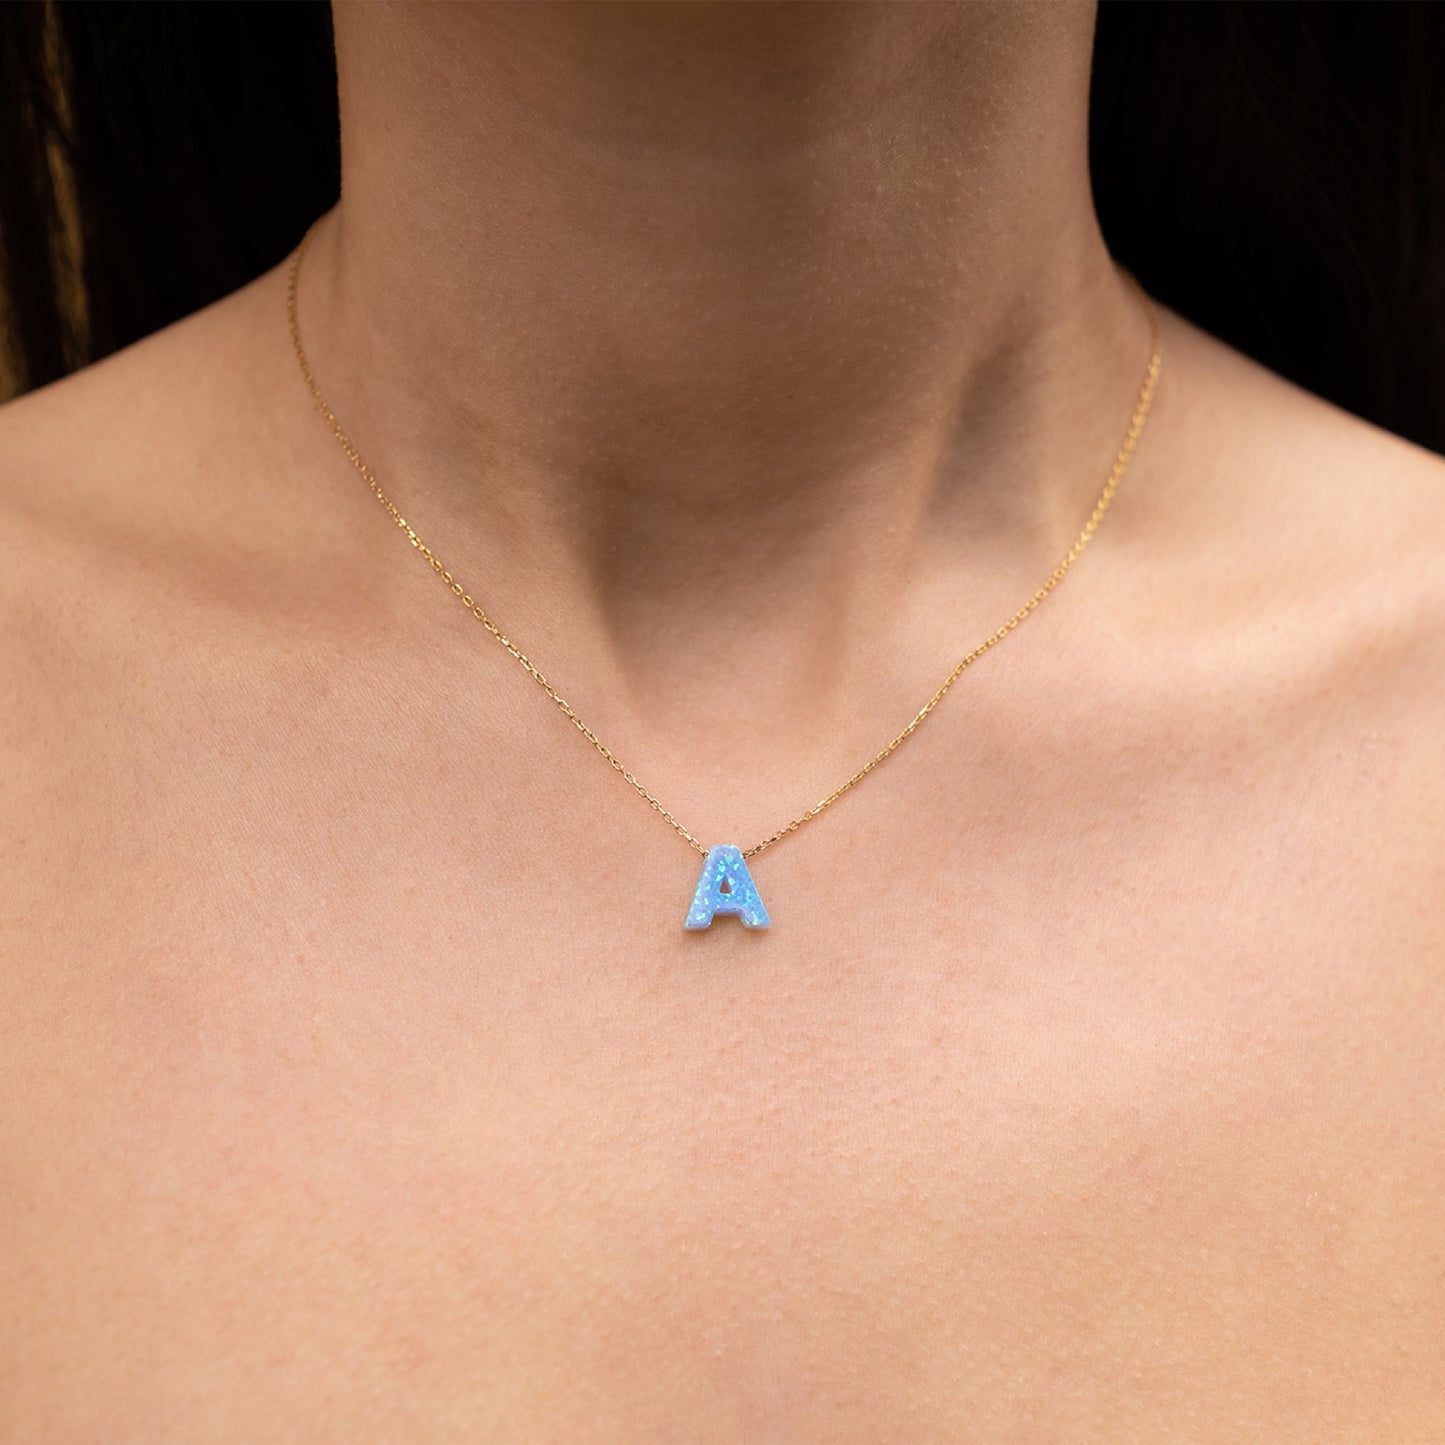 Blue Opal Initial Necklace - A letter pendant